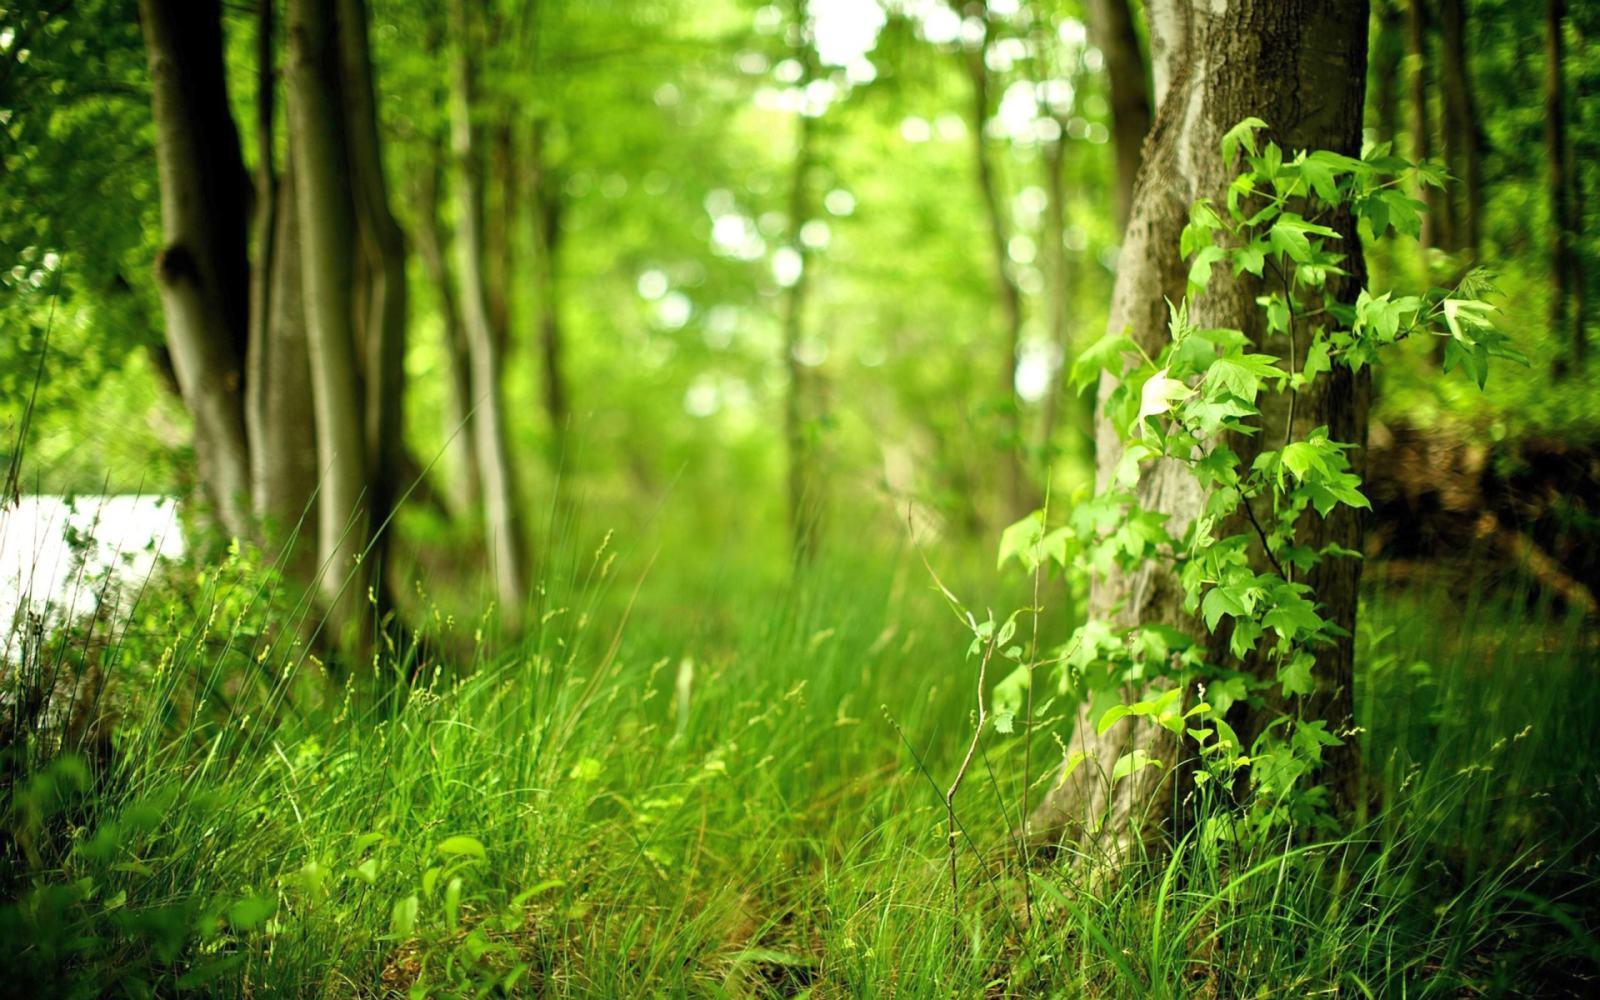 Bạn yêu thích màu xanh và rừng xanh quyến rũ? Hãy khám phá những bức ảnh nền rừng xanh đẹp để trang trí cho thiết bị của bạn. Các hình nền rừng xanh sẽ đem lại cho bạn cảm giác thư thái và mát mẻ giữa không khí ngột ngạt.